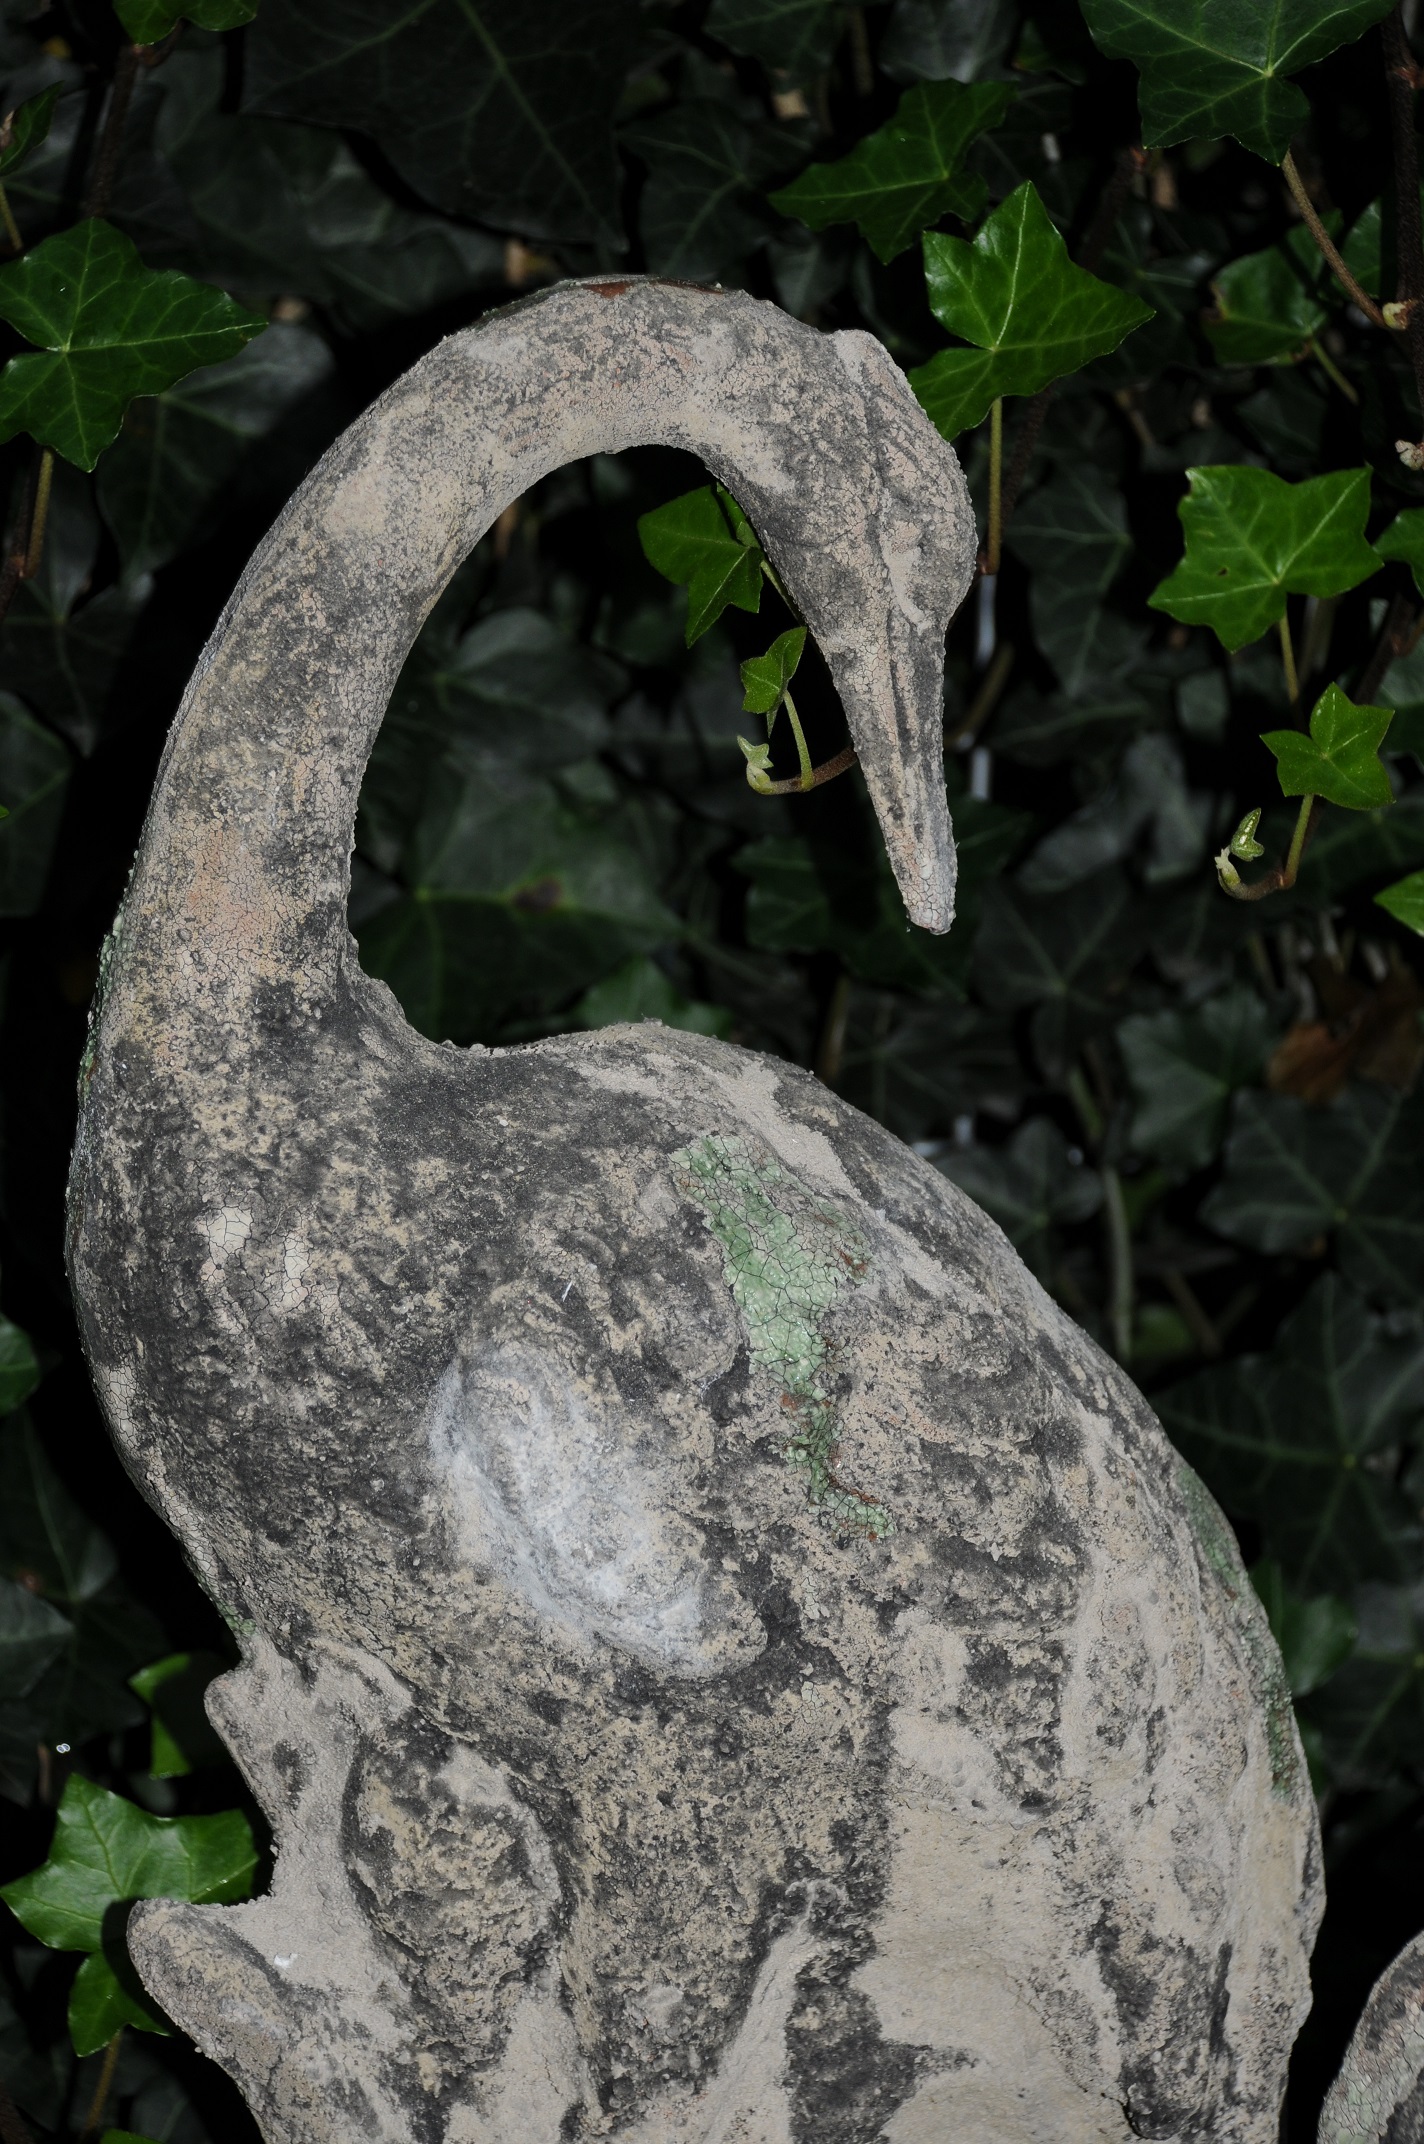 Prachtige set stenen kraanvogels voor in de tuin bij de vijver